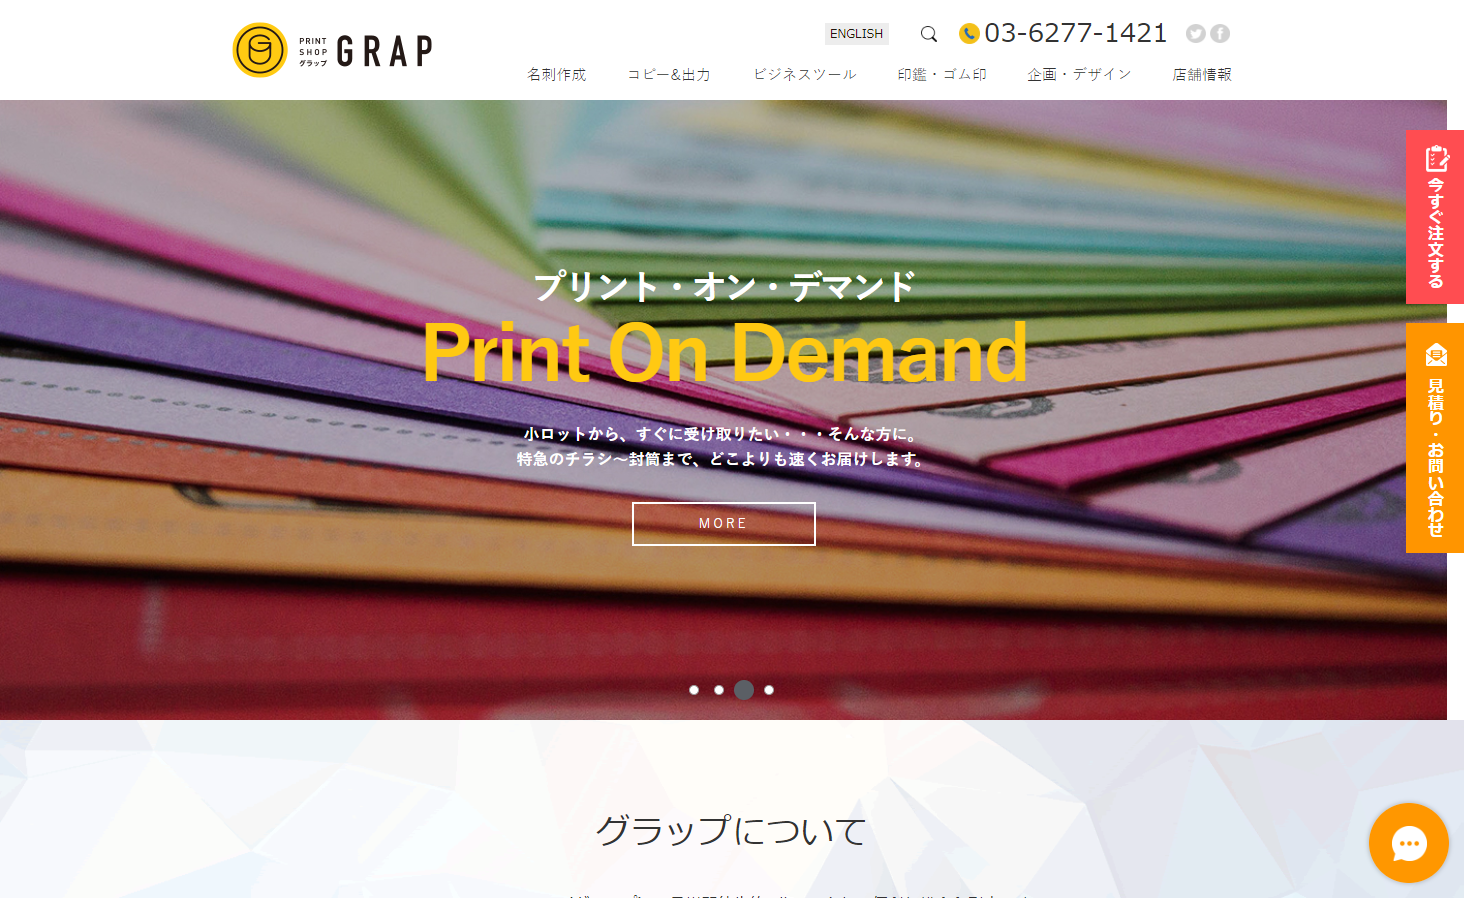 グラップ株式会社 / Printshop GRAPのグラップ株式会社 / Printshop GRAPサービス